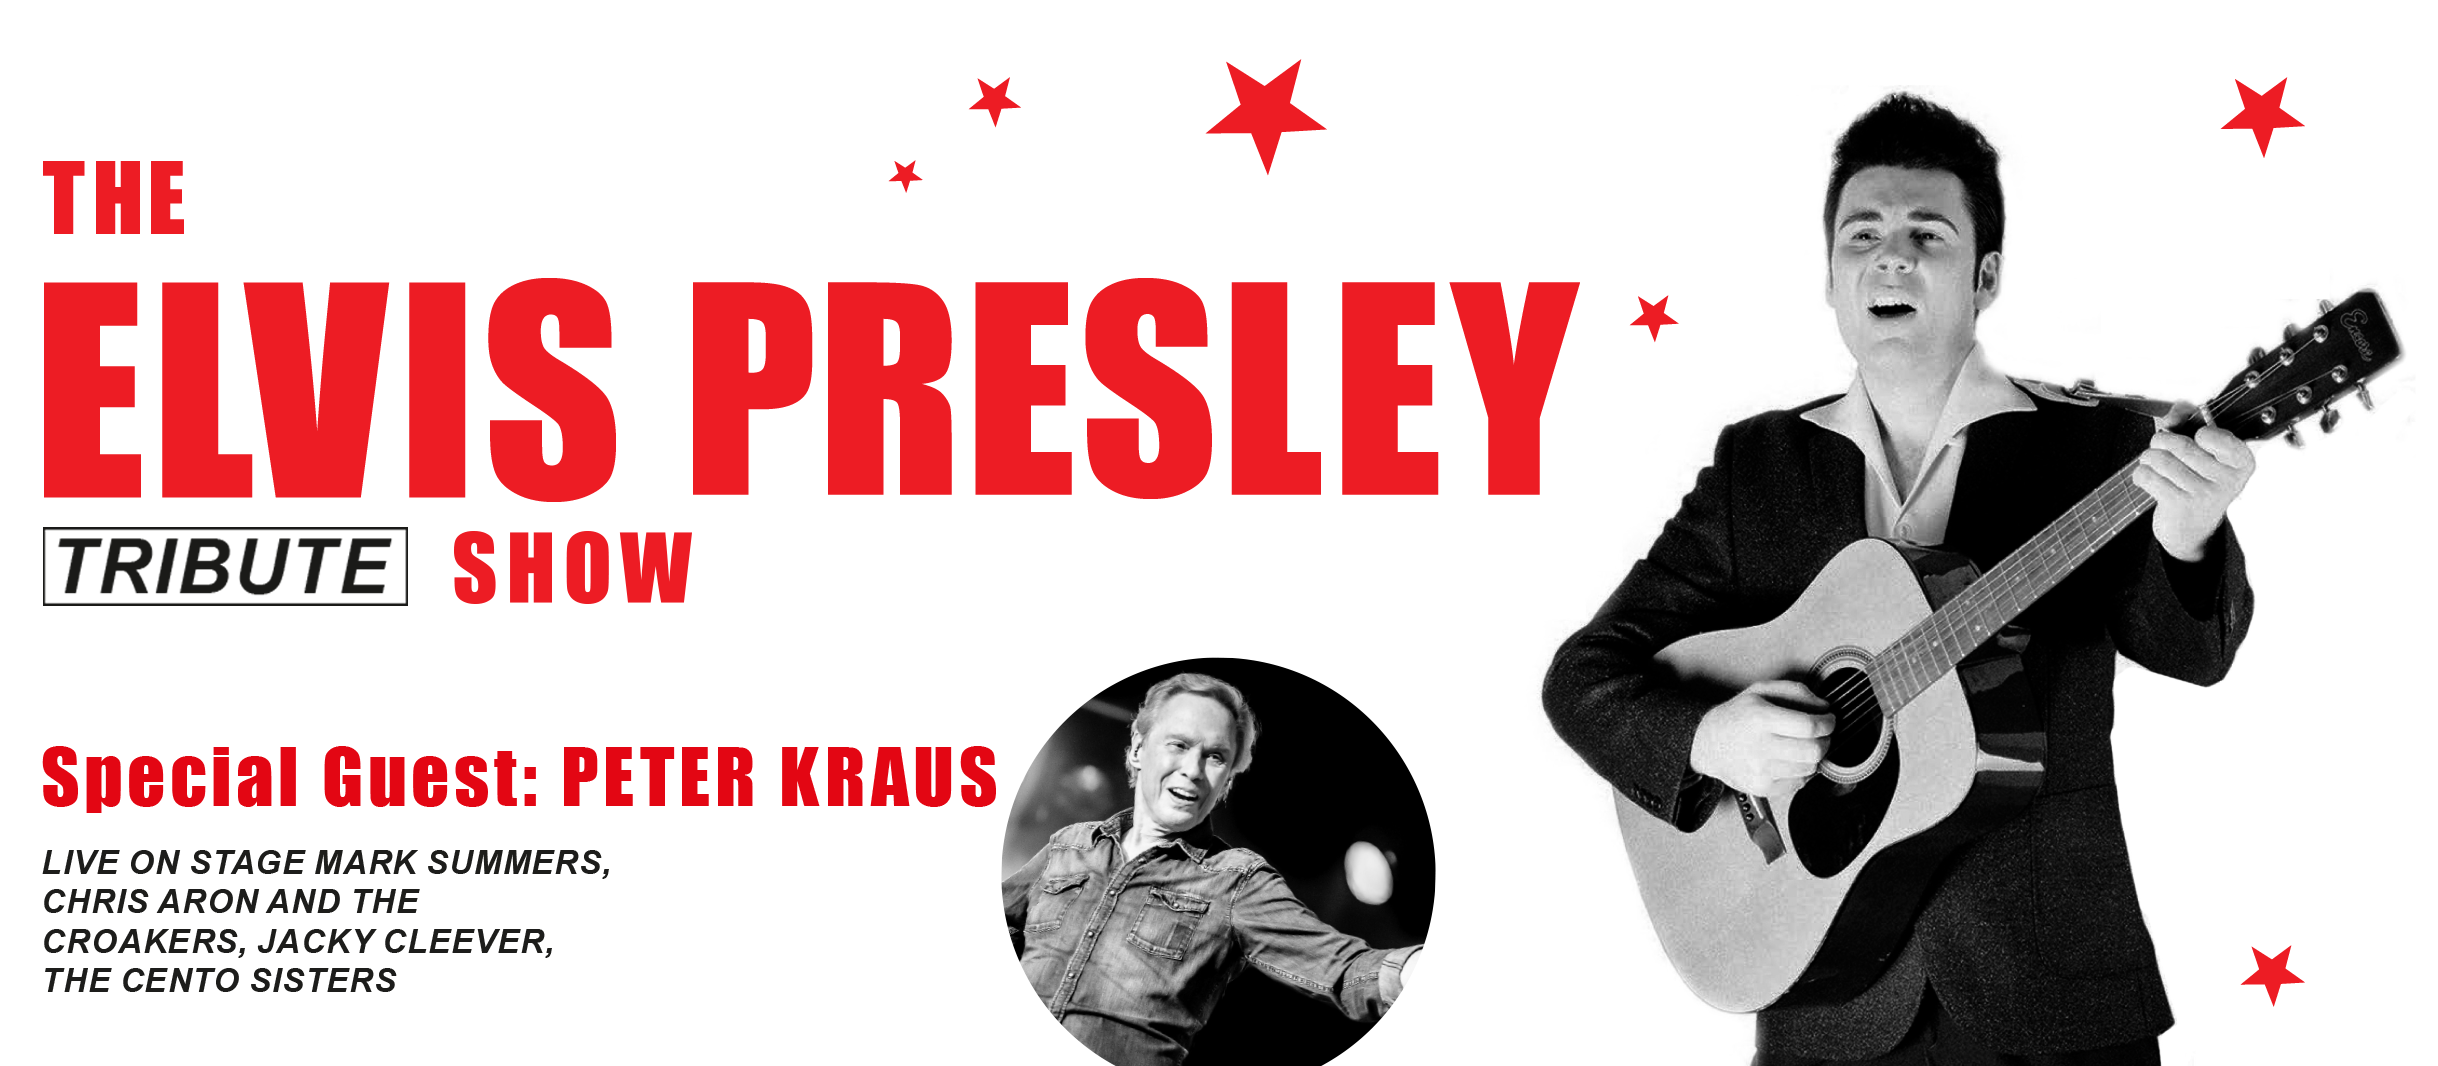 Plakatmotiv zum Konzert The Elvis Presley Tribute Show: Elvis Presley mit Gitarre und Abbildung von Peter Kraus mit Sternen im 50er Jahre Stil